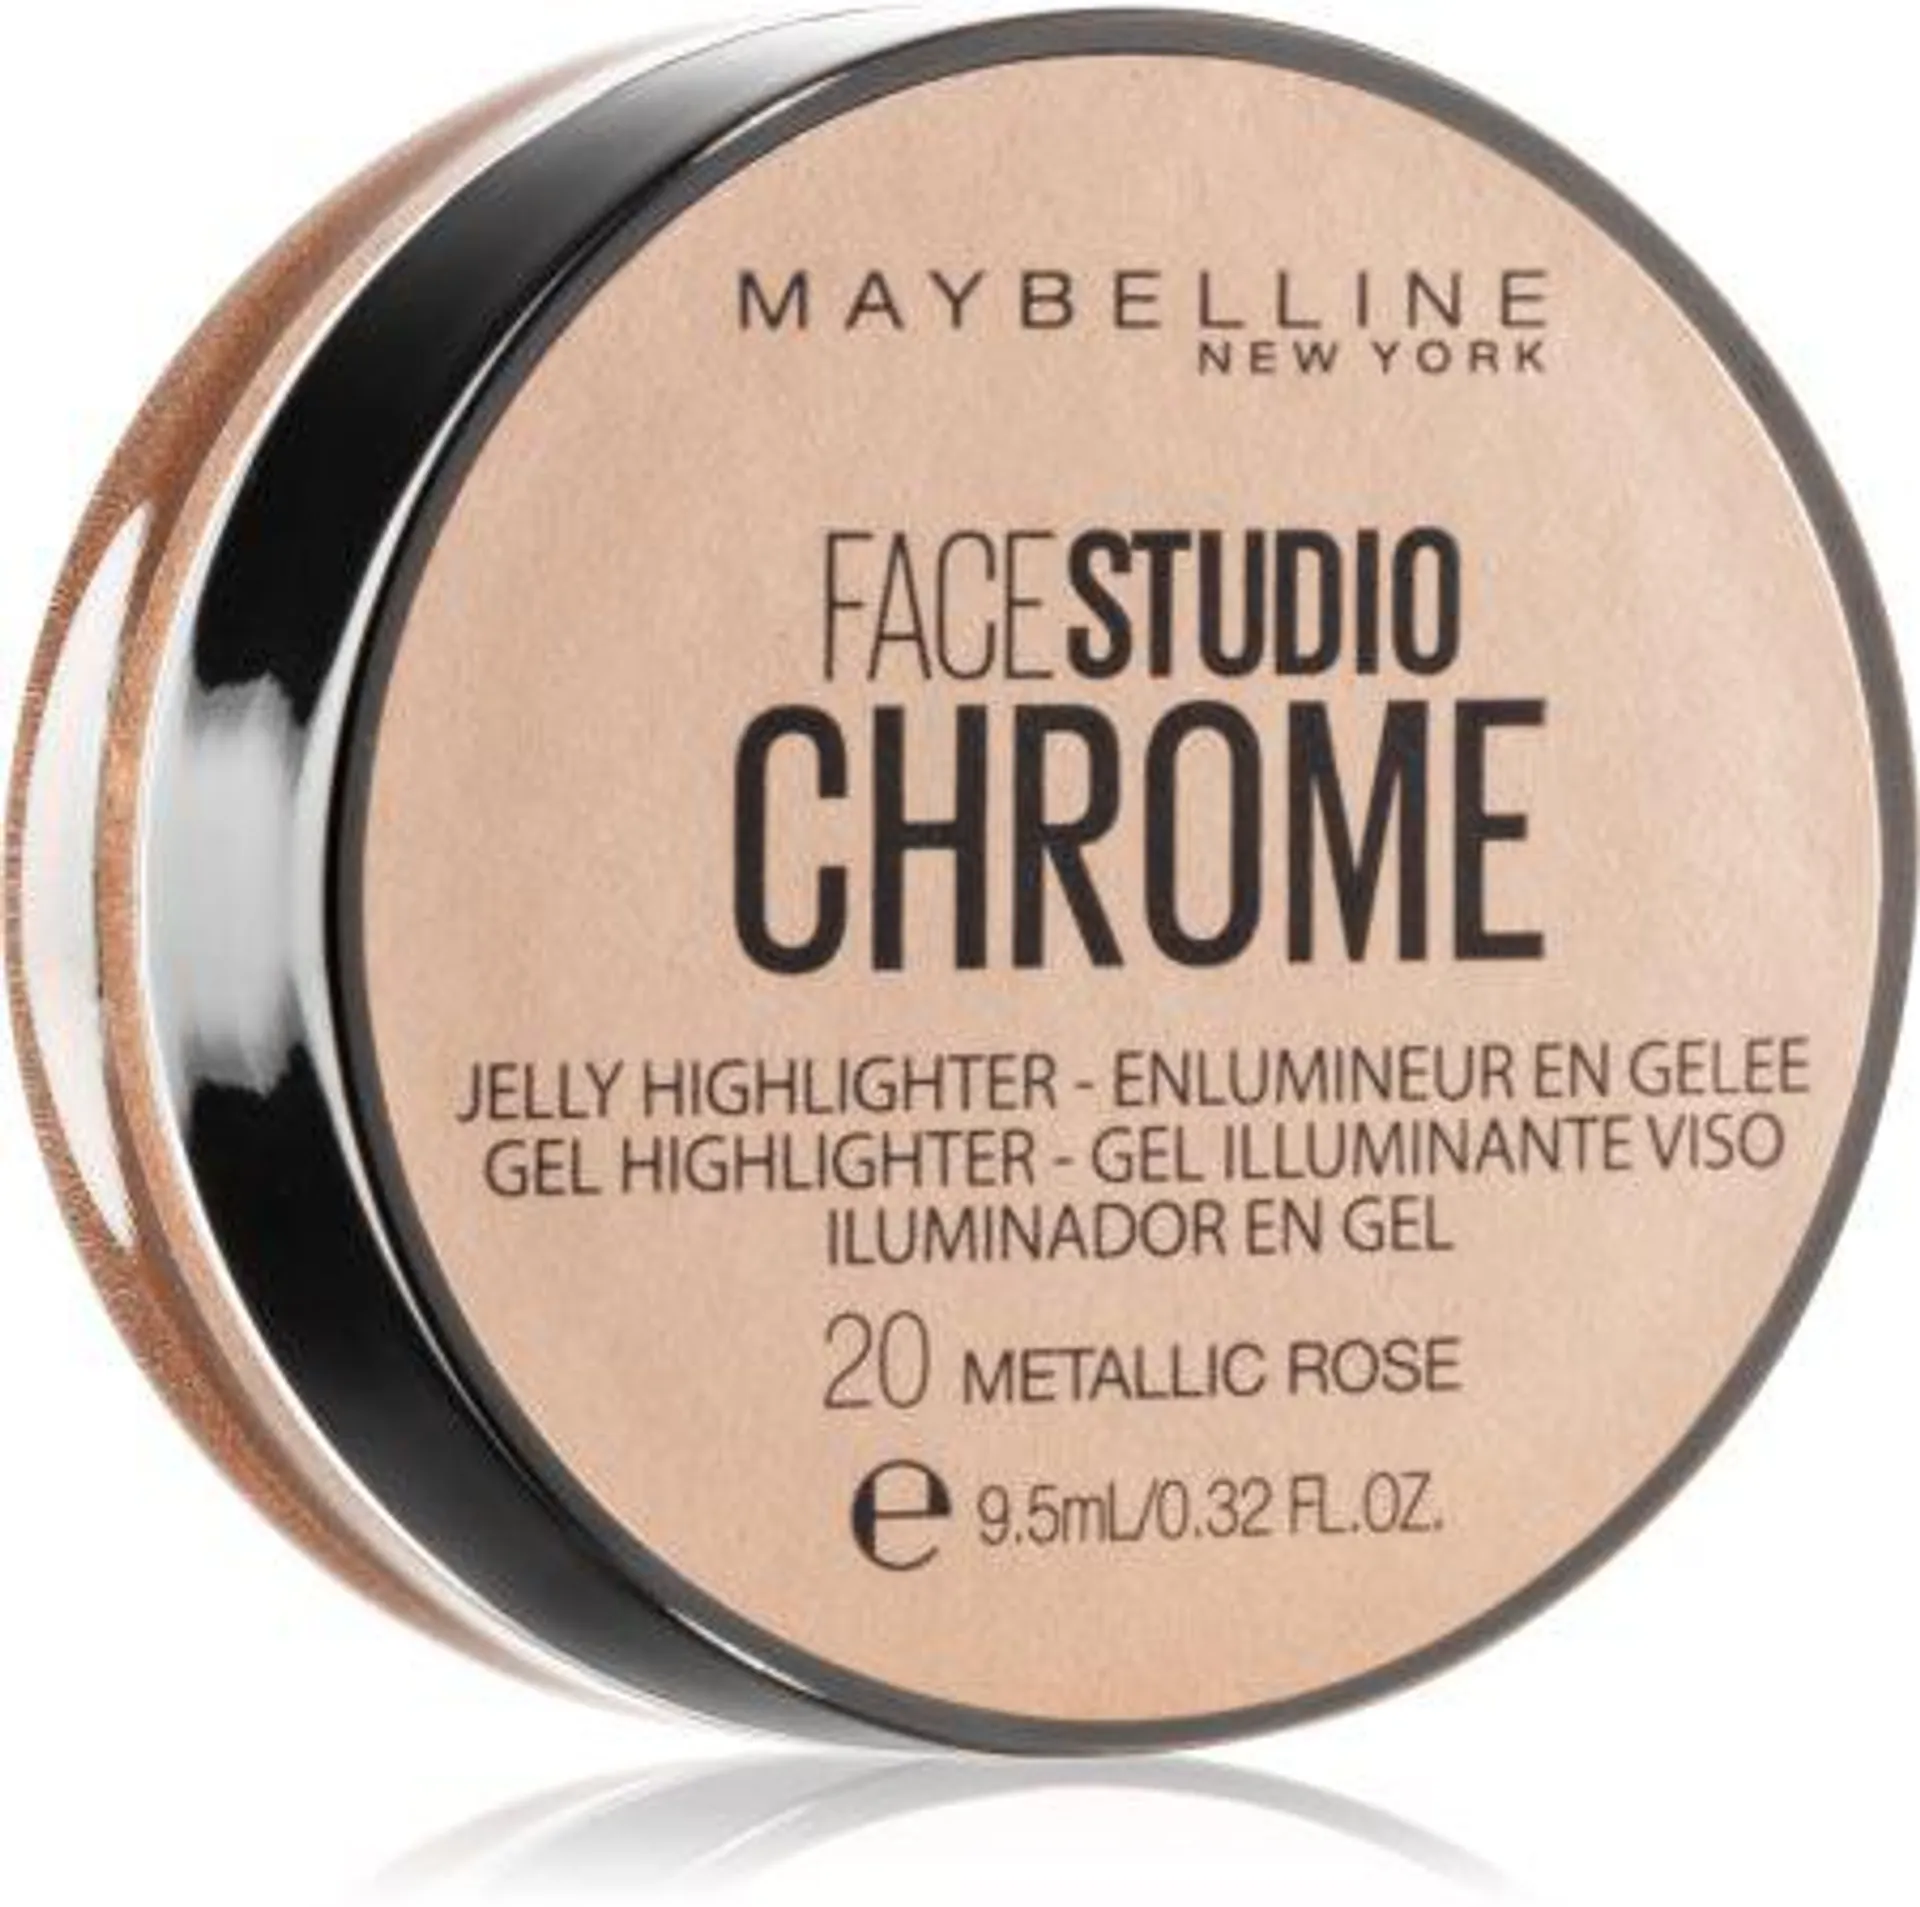 Face Studio Chrome Jelly Highlighter